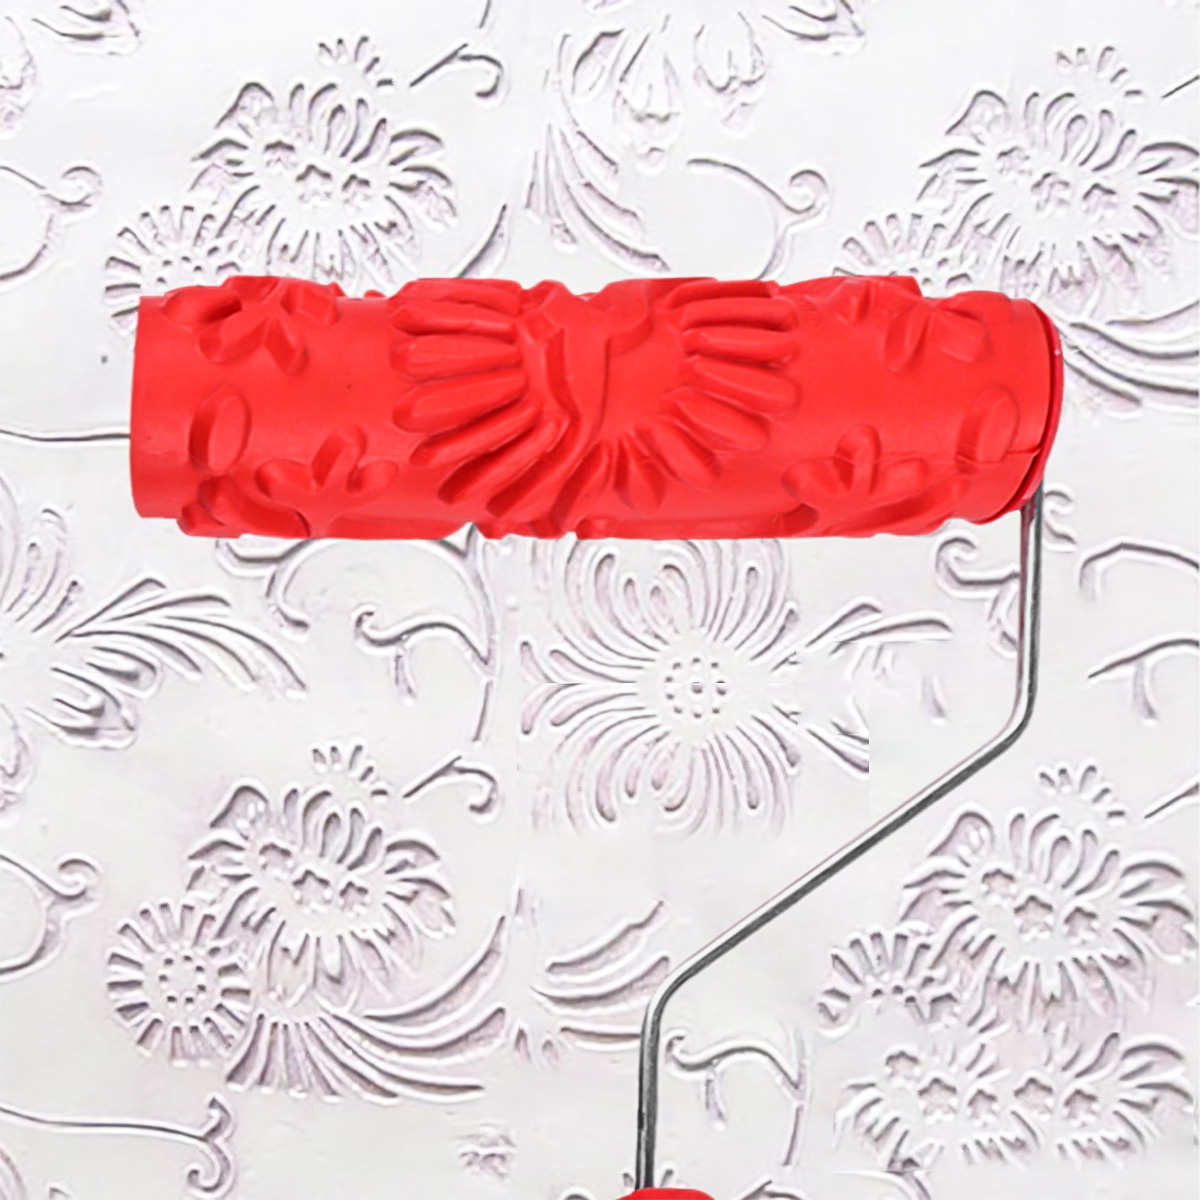 ANENG Bloemen Hout Patroon Schilderen Roller Graan Schilderij Rubber Met Handvat Muurschildering DIY Decoratie Tool